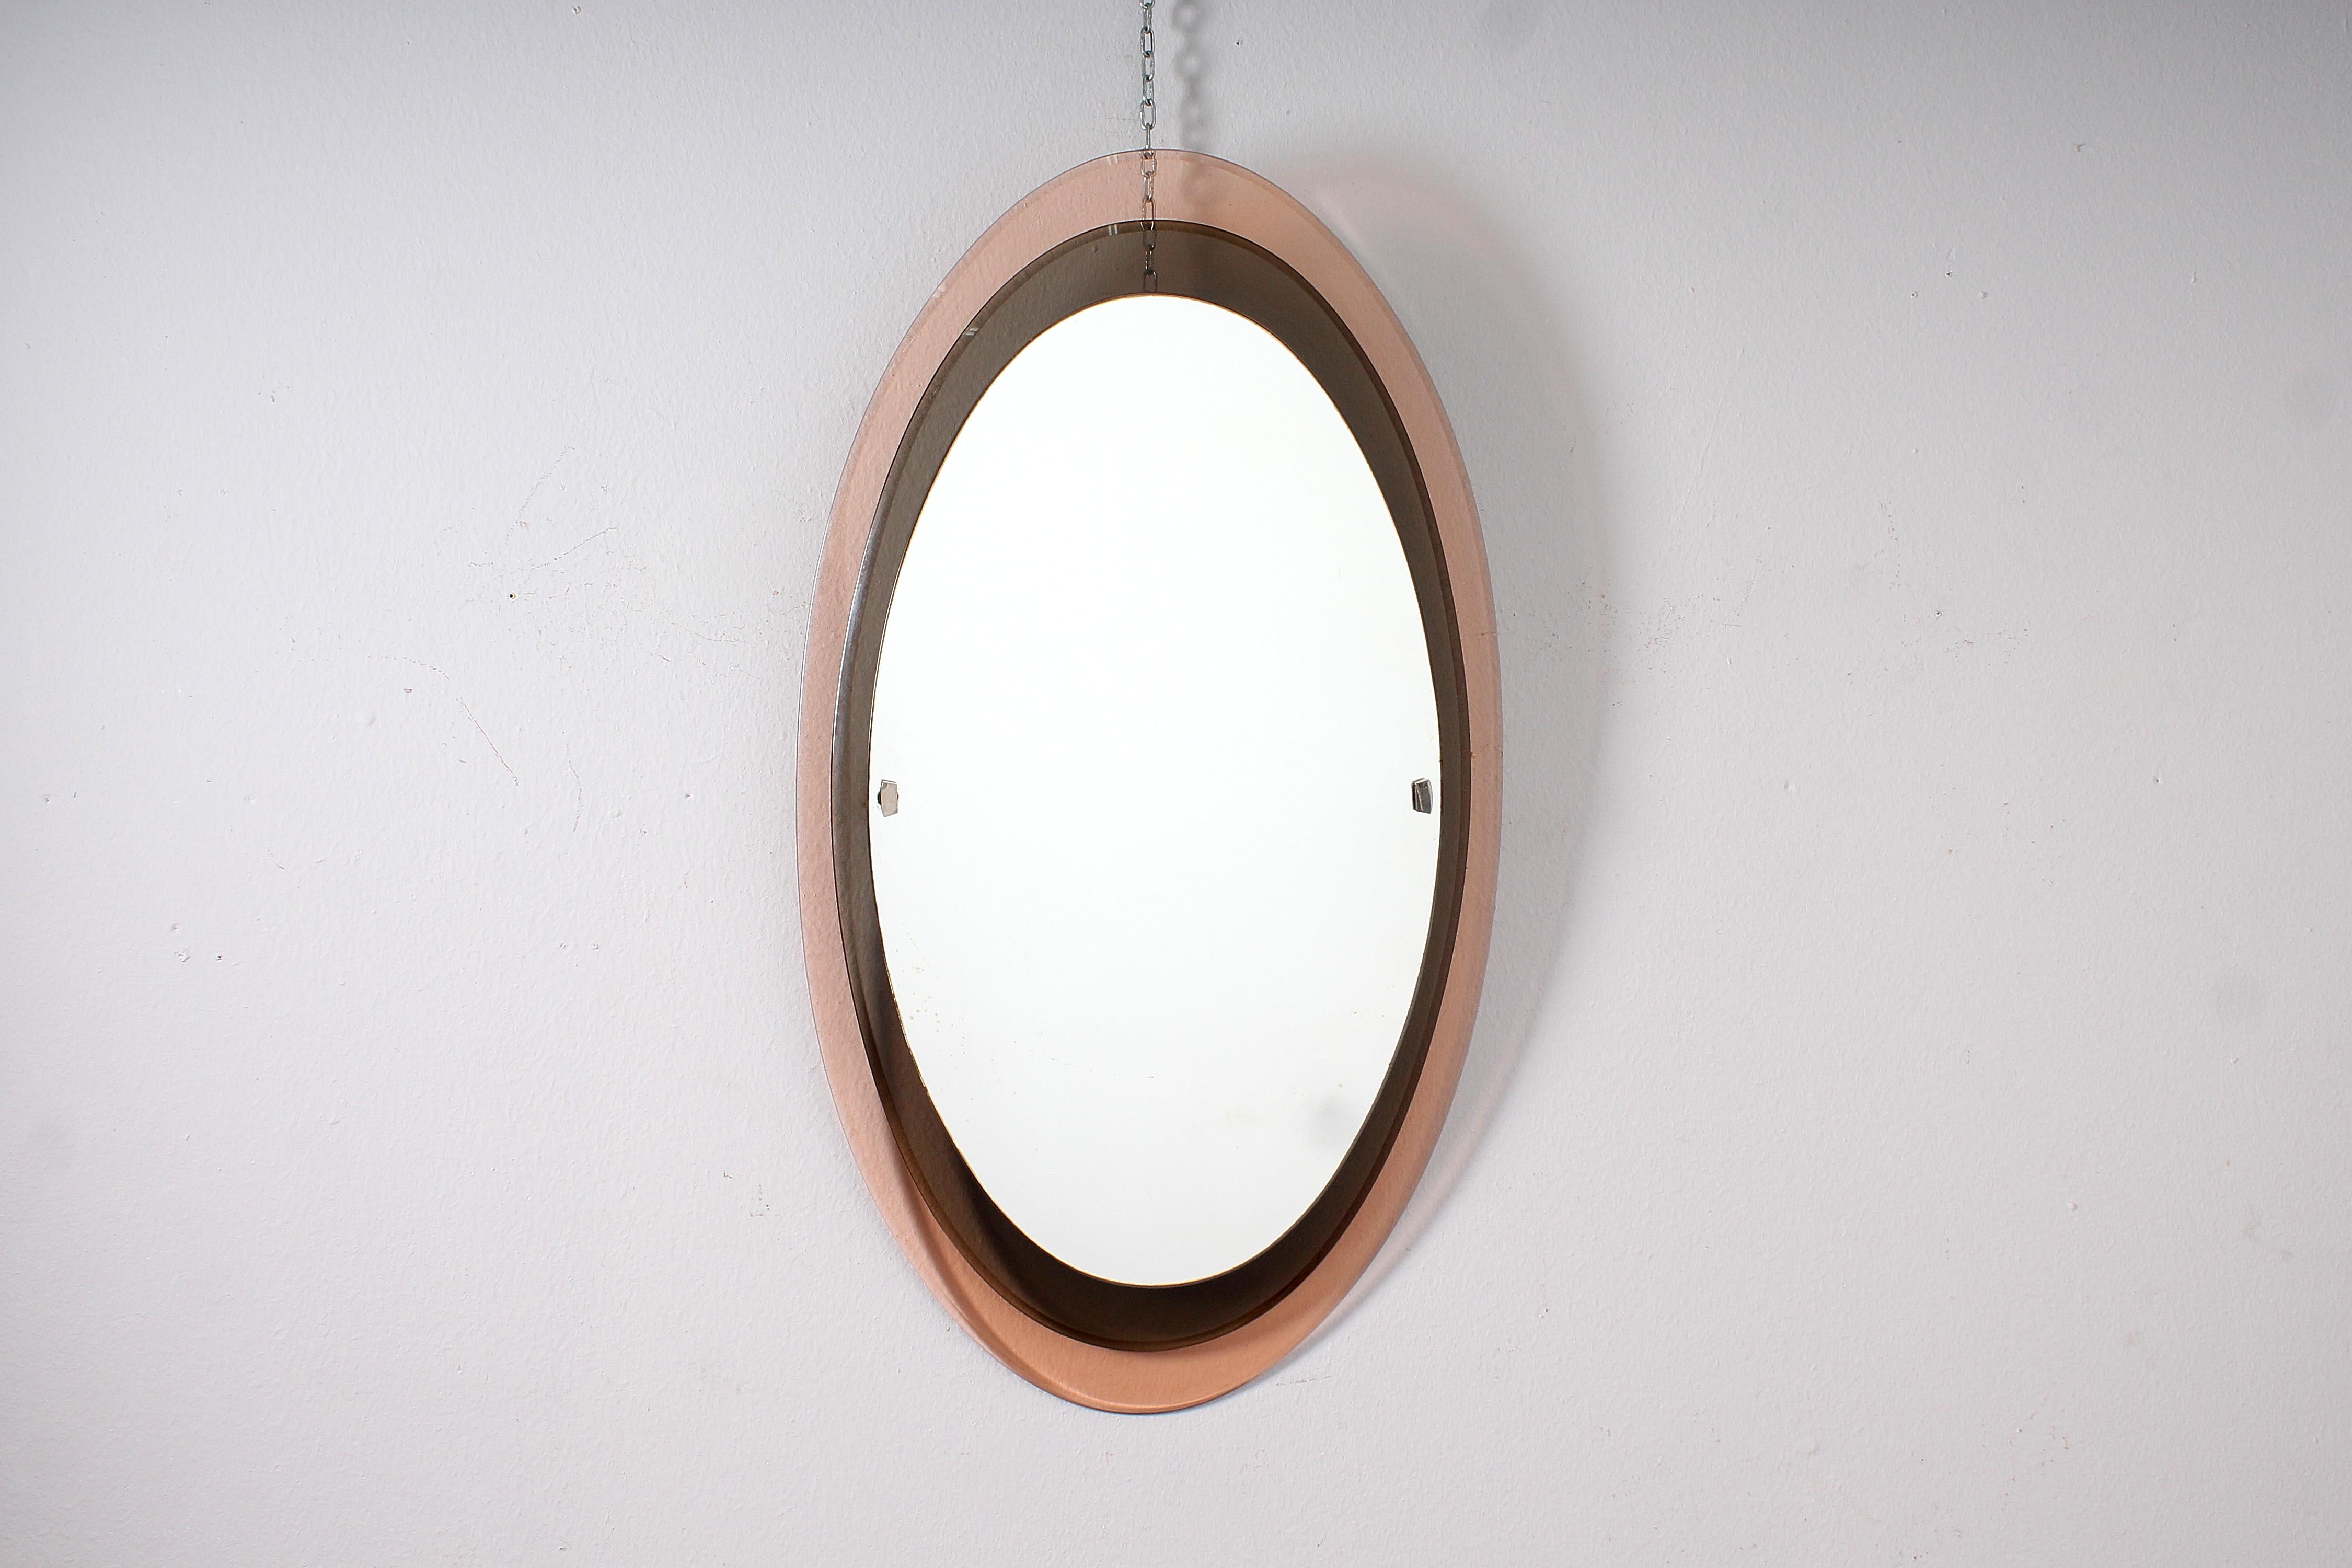 Raffinierter Spiegel mit ovalem Rahmen auf zwei Ebenen aus rosafarbenem und rauchfarbenem Glas, mit abgeschrägtem Rand und ebenfalls ovalem Spiegel. Mod. 